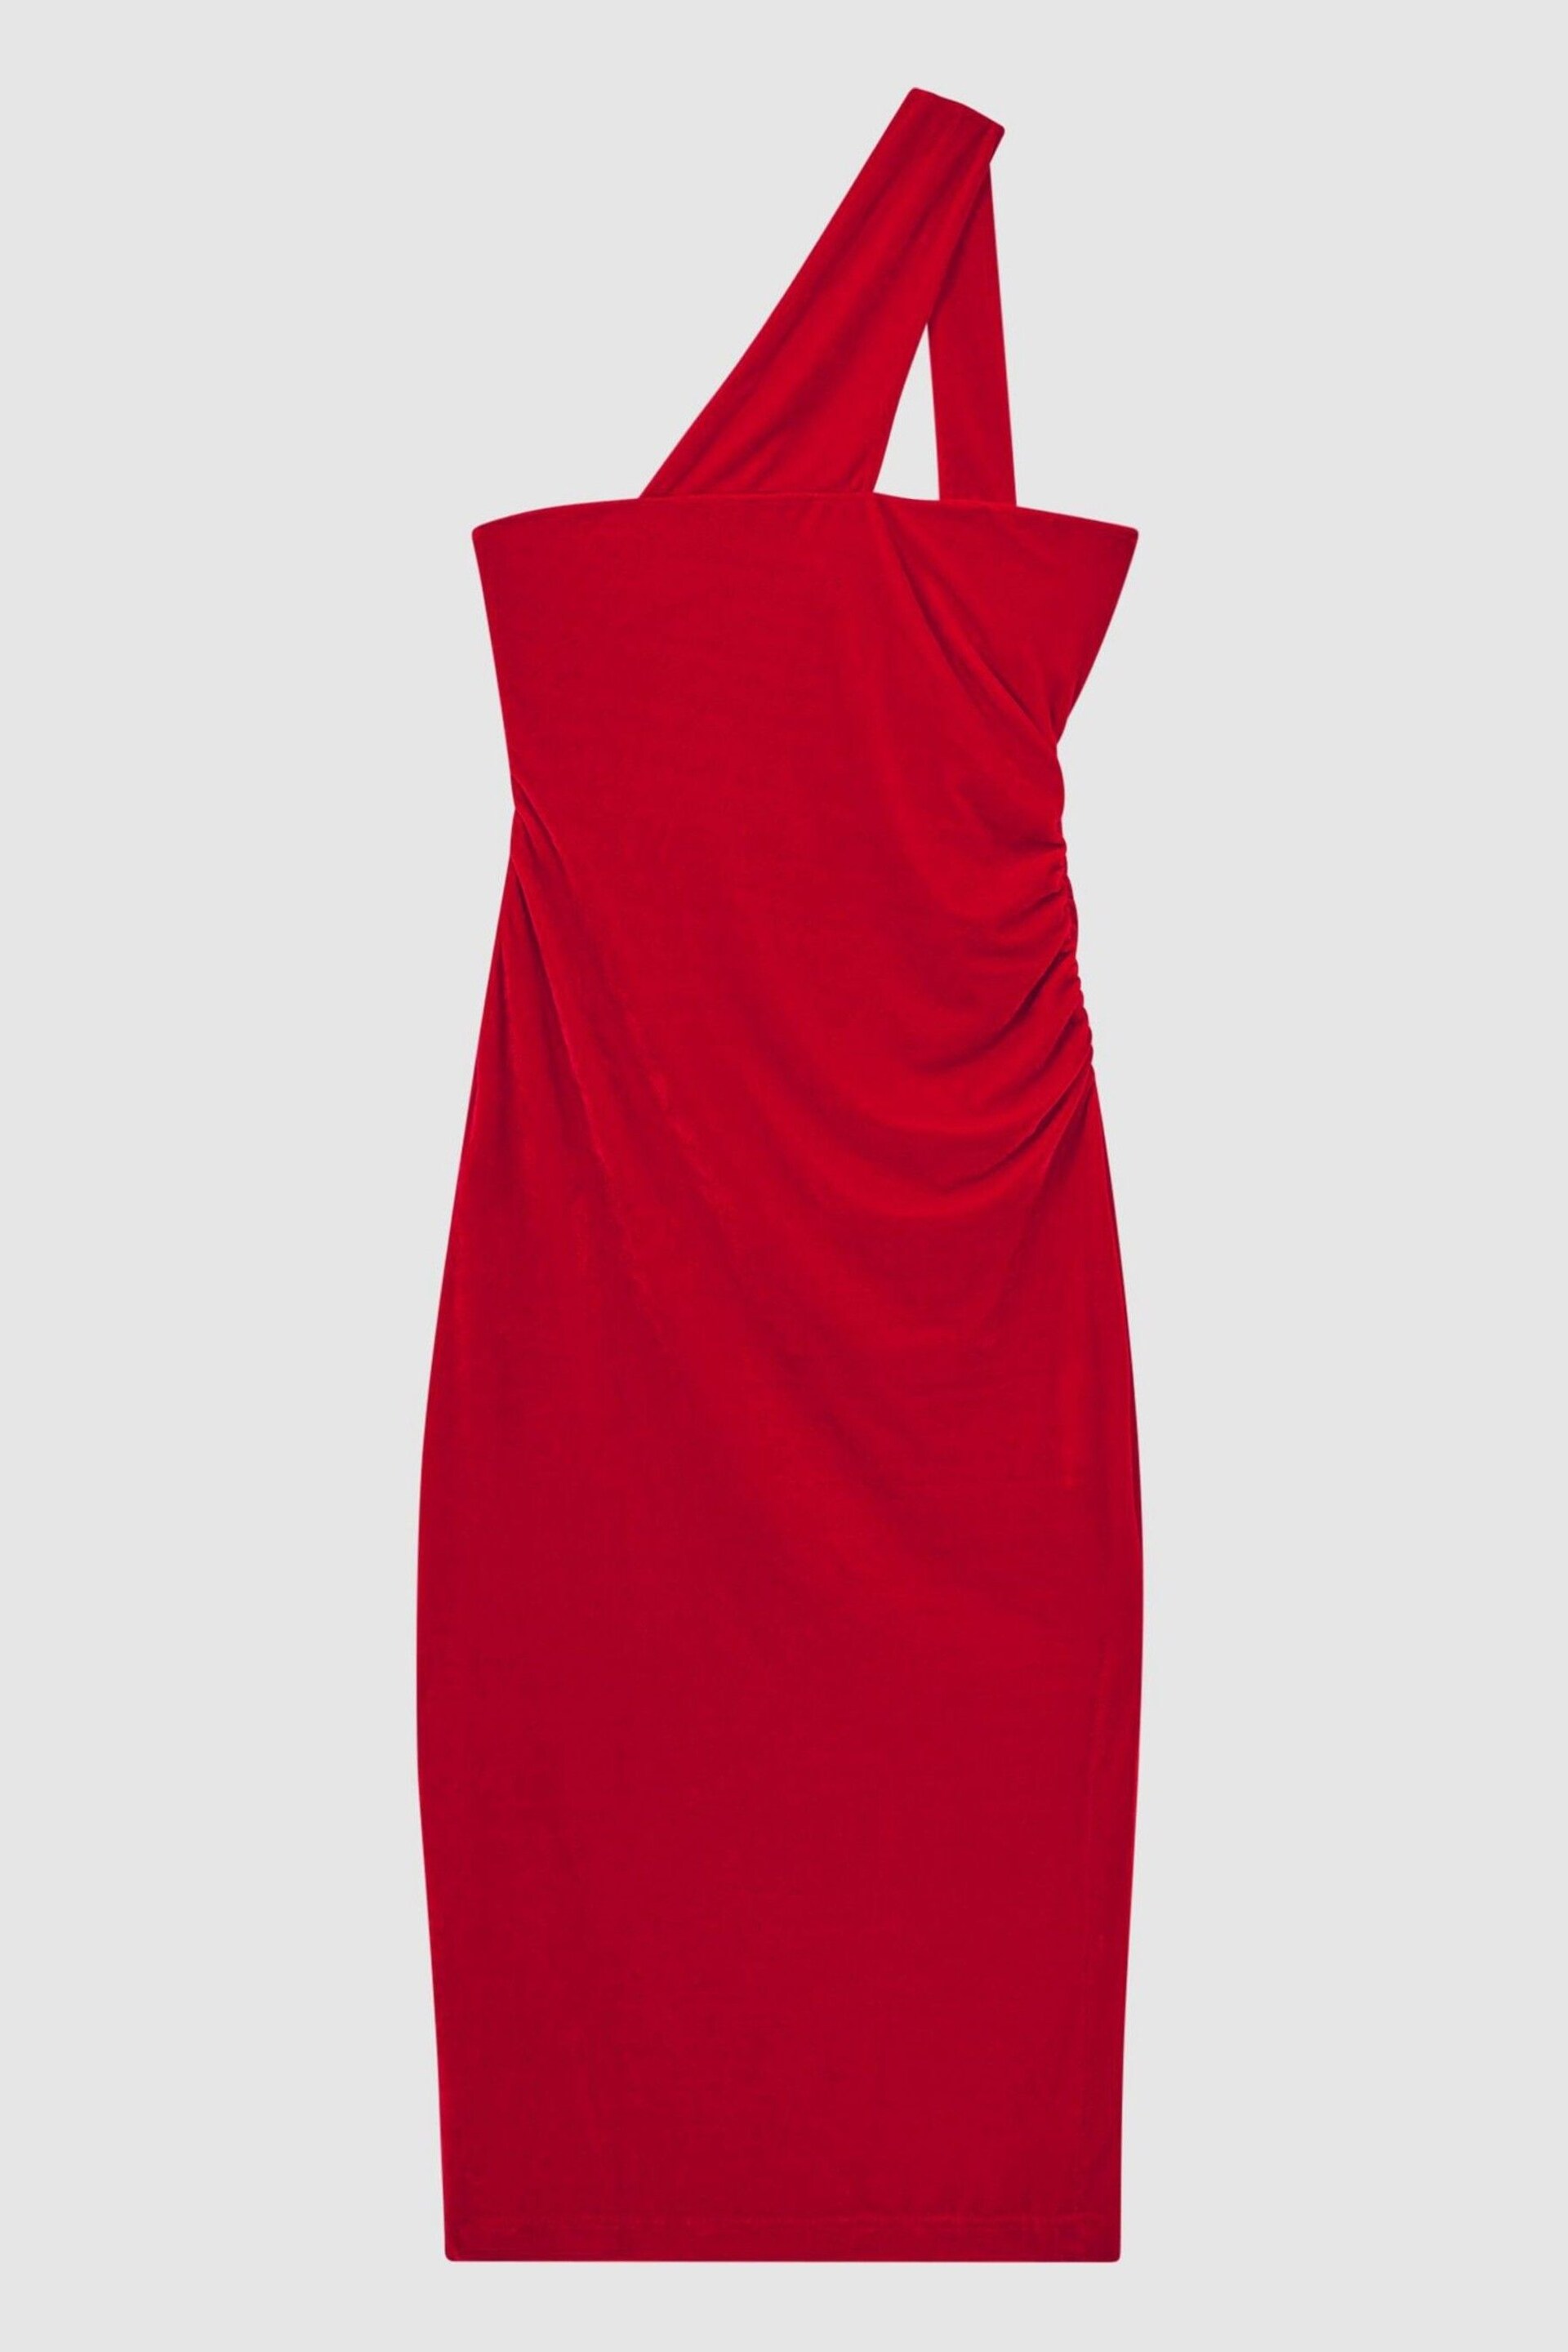 Reiss Red Abbey Velvet One-Shoulder Midi Dress - Image 2 of 4